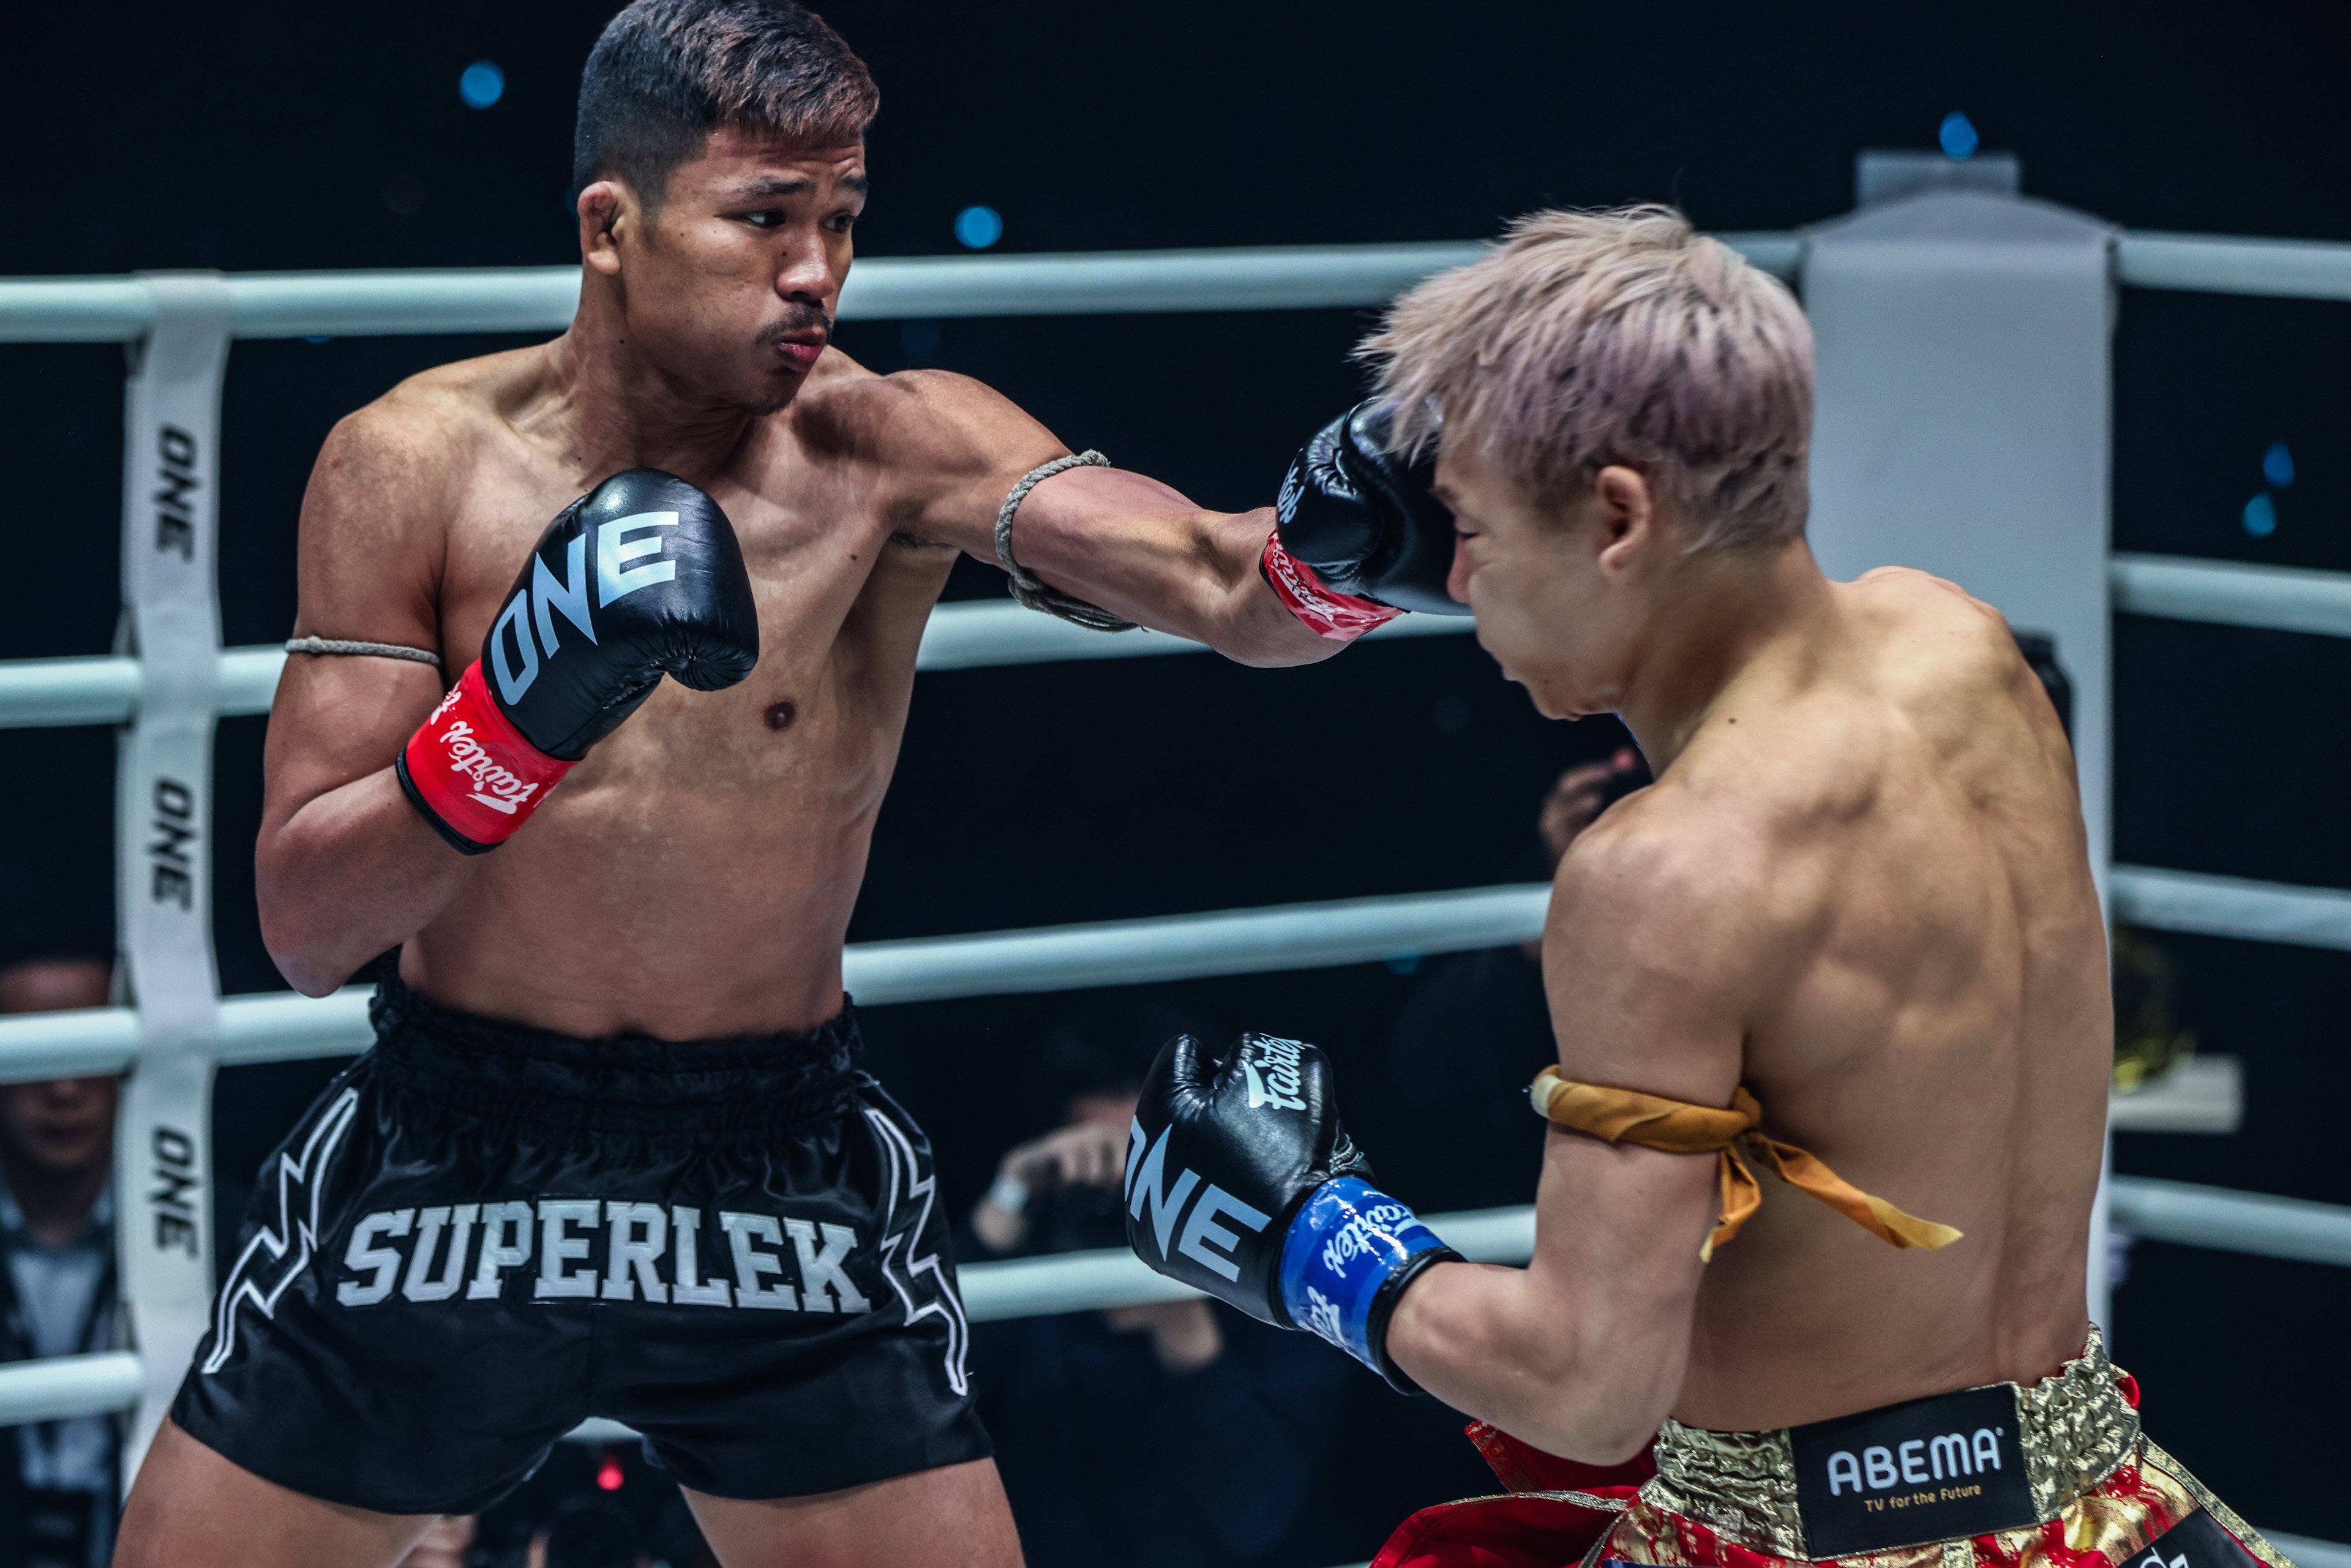 Superlek Kiatmoo9 jabs Takeru Segawa during their kickboxing fight at ONE 165 in Tokyo. Photo: ONE Championship